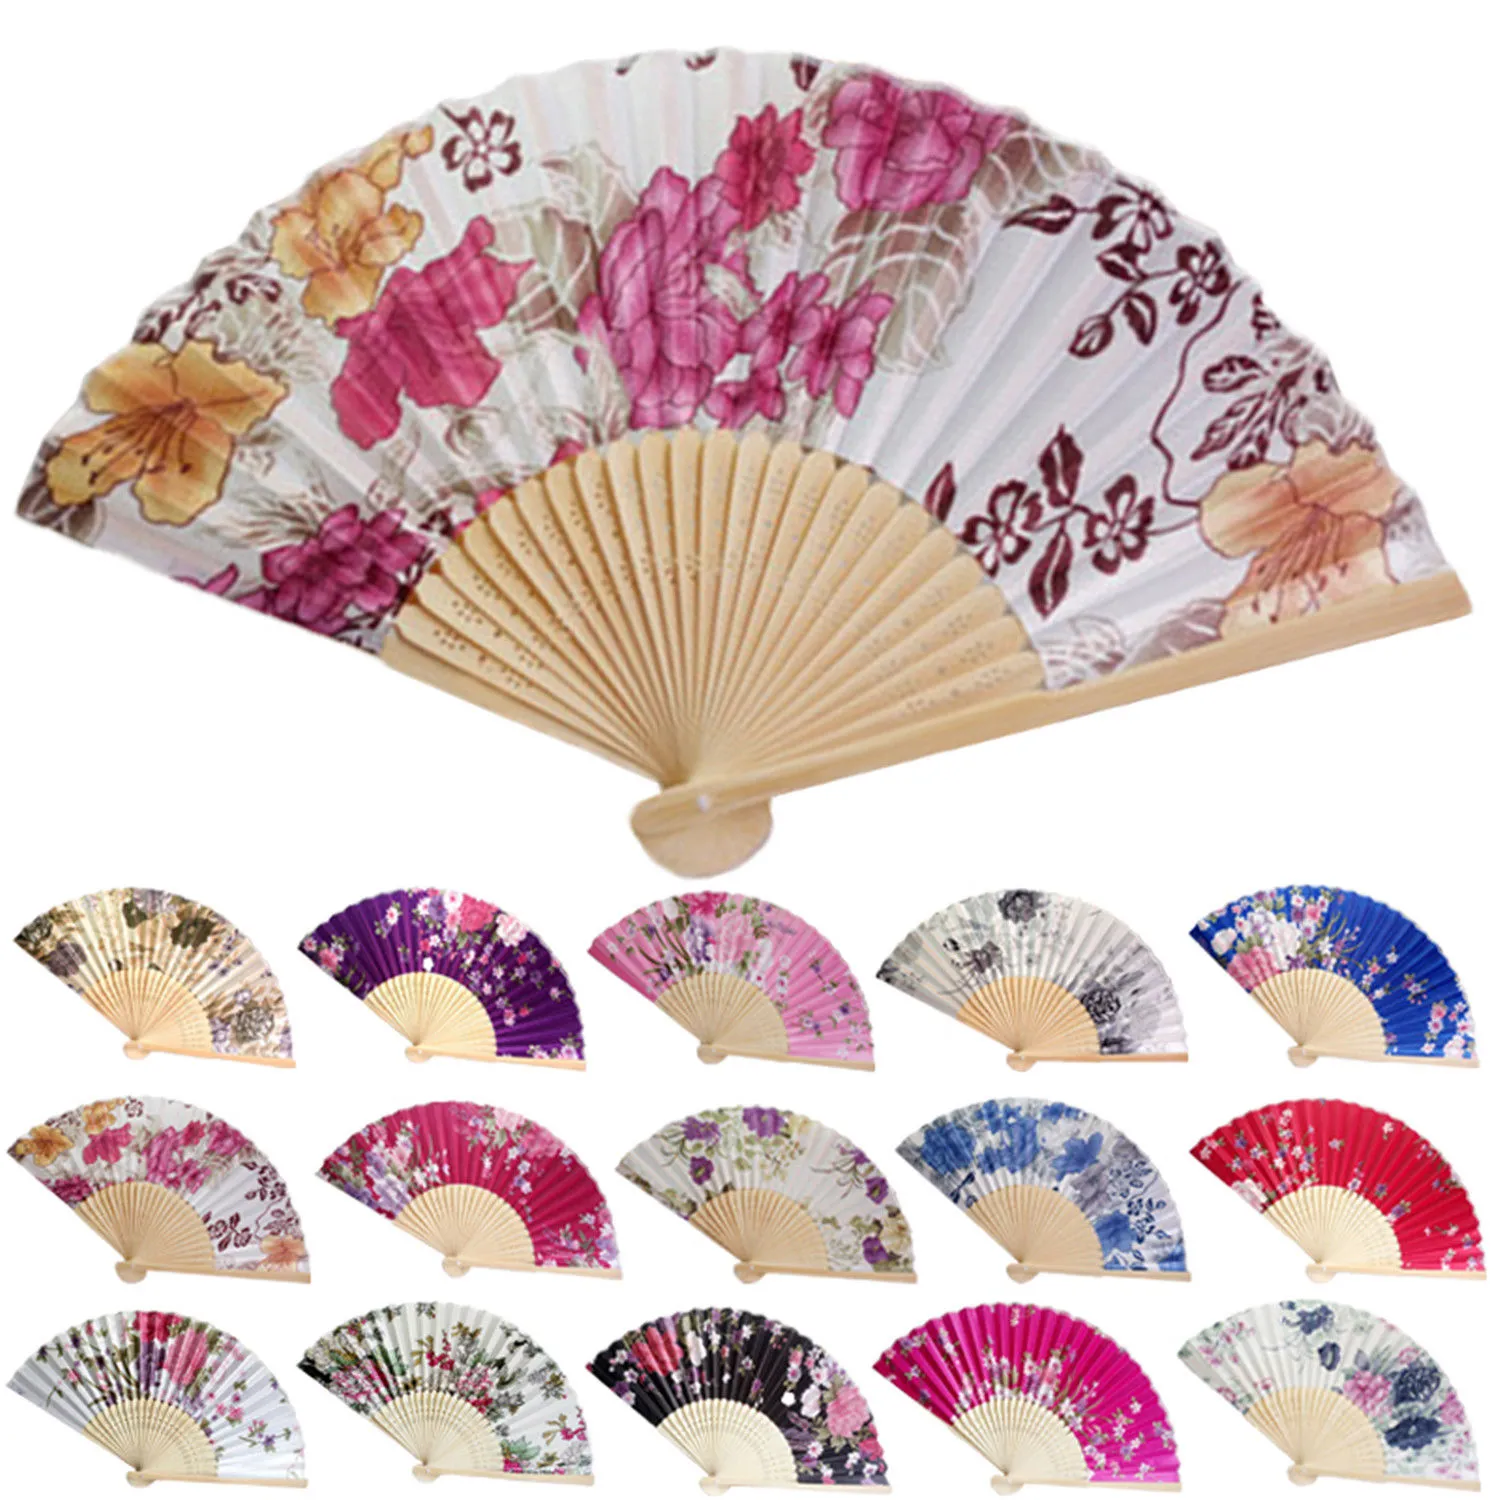 Personalized Wedding Fan Vintage Bamboo Folding Hand Held Flower Fan Chinese Dance Party Pocket Gifts wedding fan purple